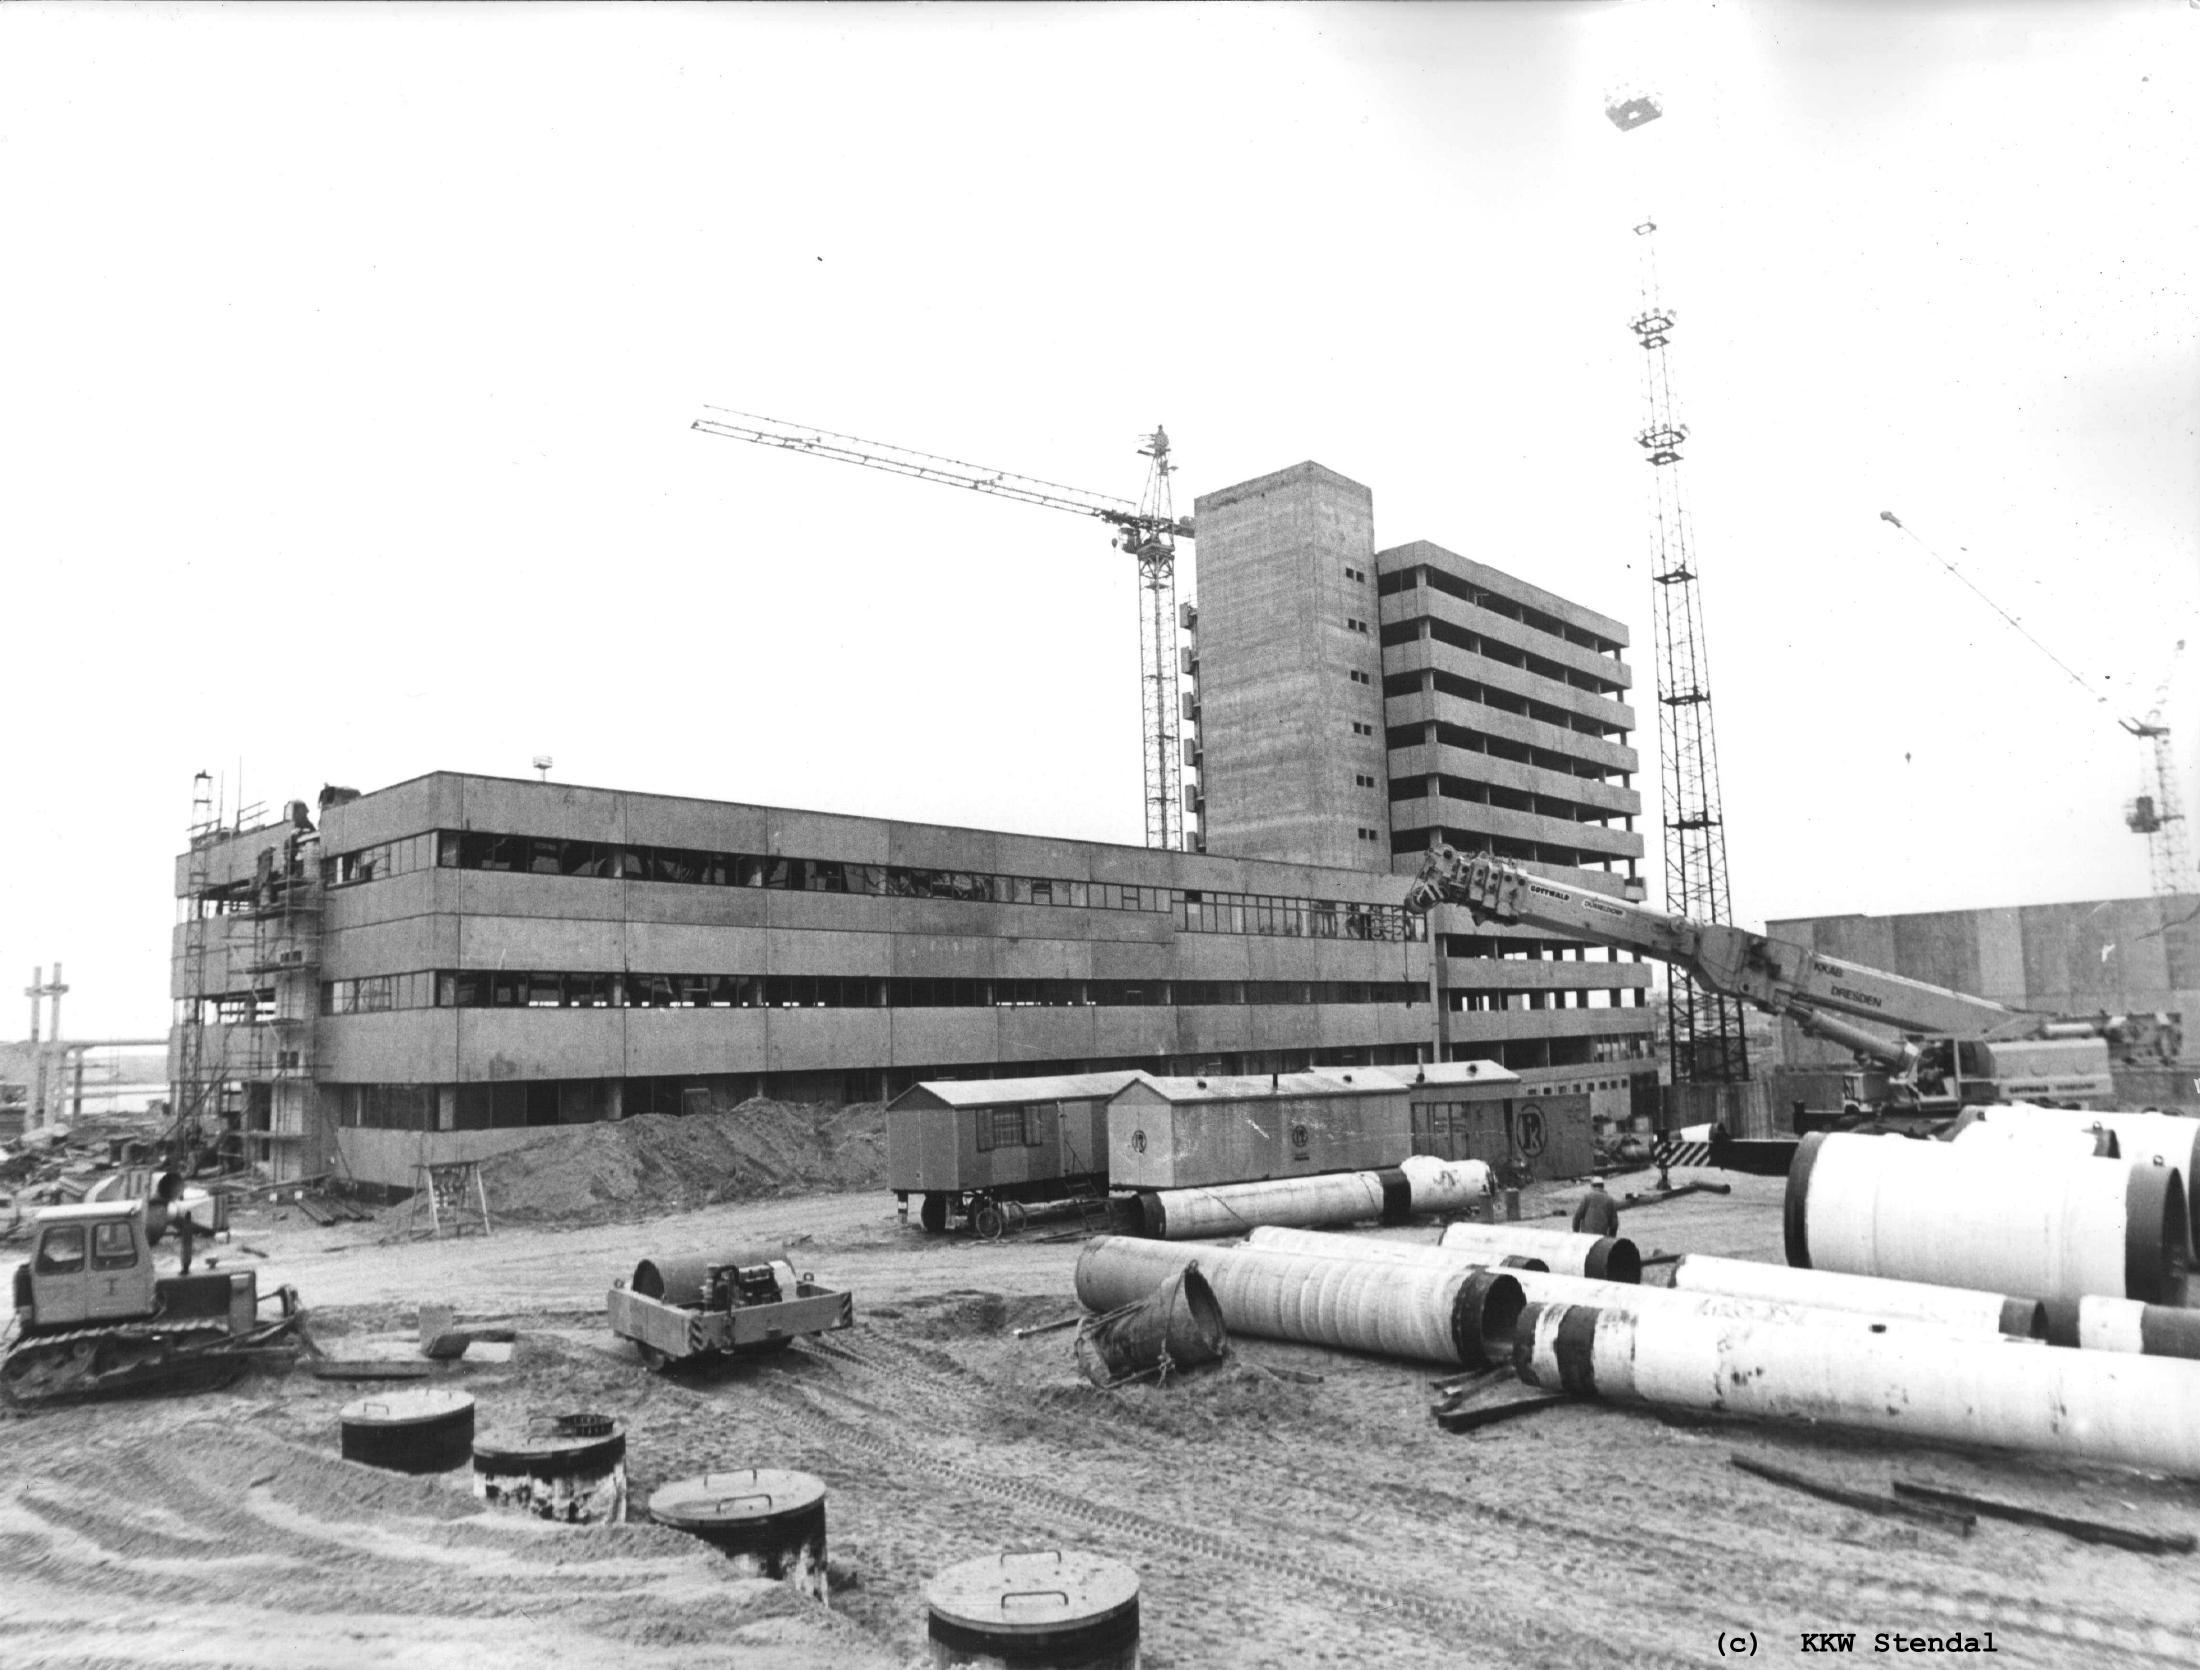  KKW Stendal 1987, Betriebsgebäude am Block A 